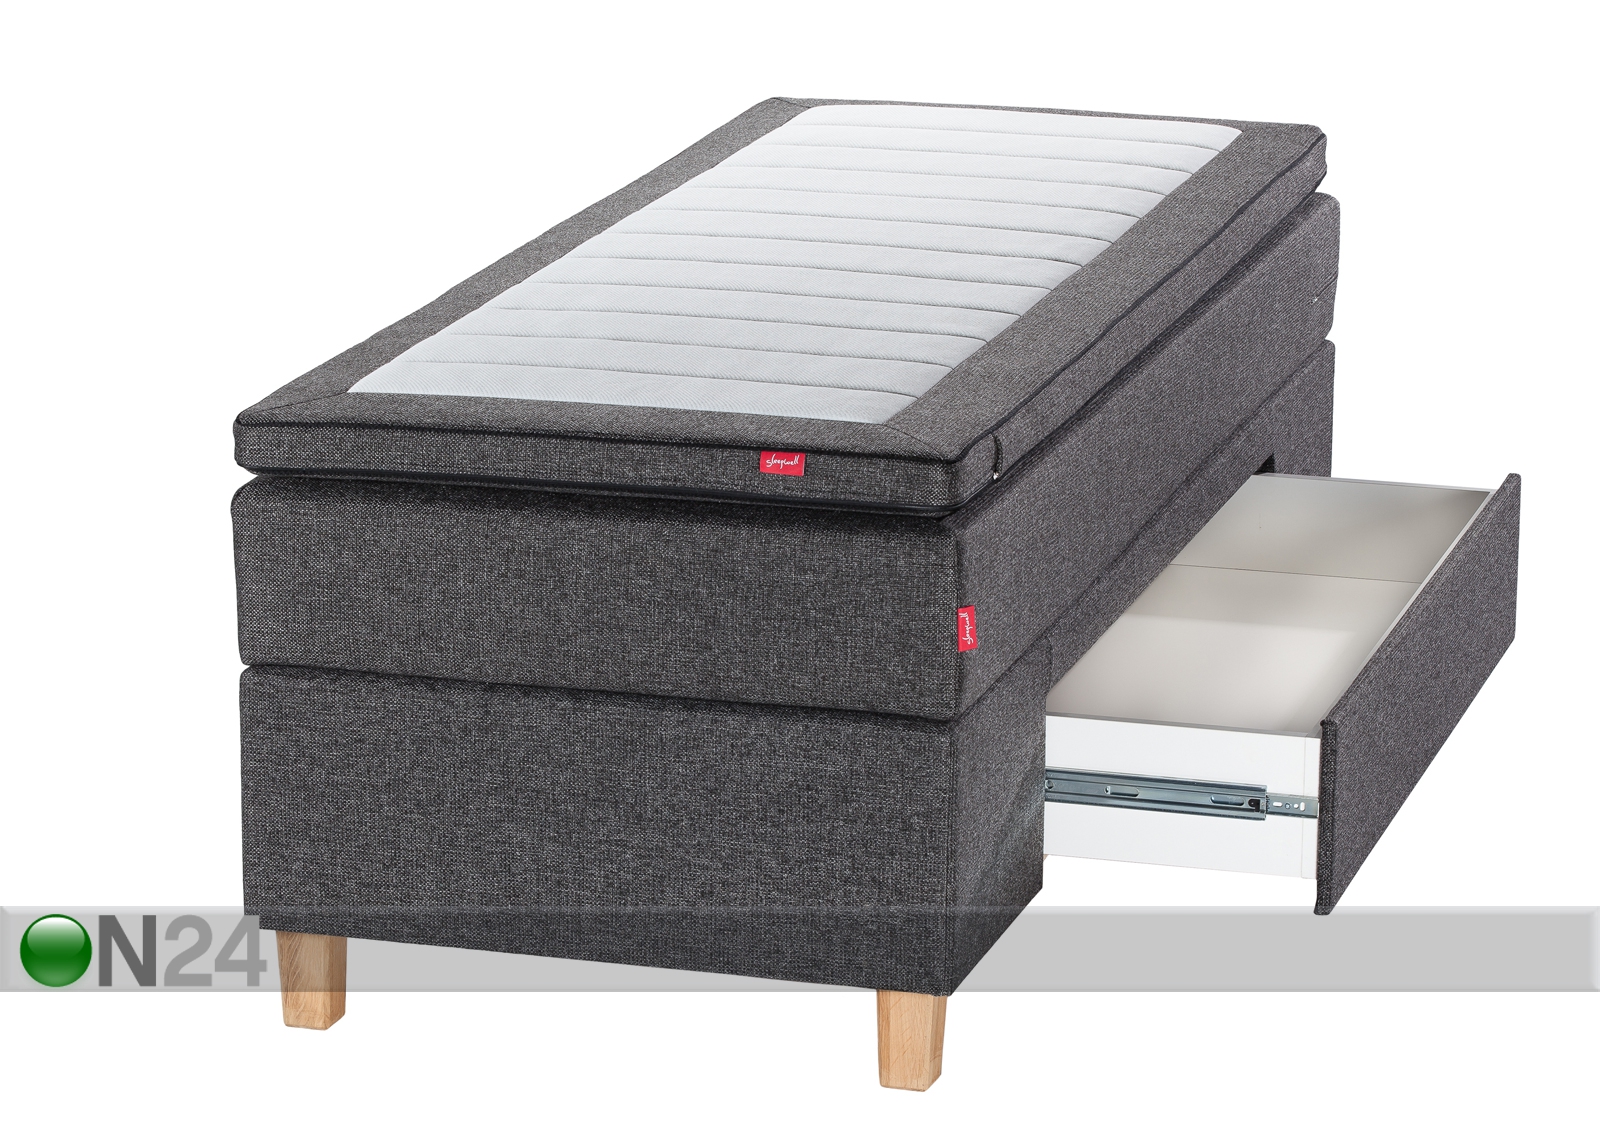 Sleepwell Black континентальная кровать с ящиком 90x200 cm увеличить